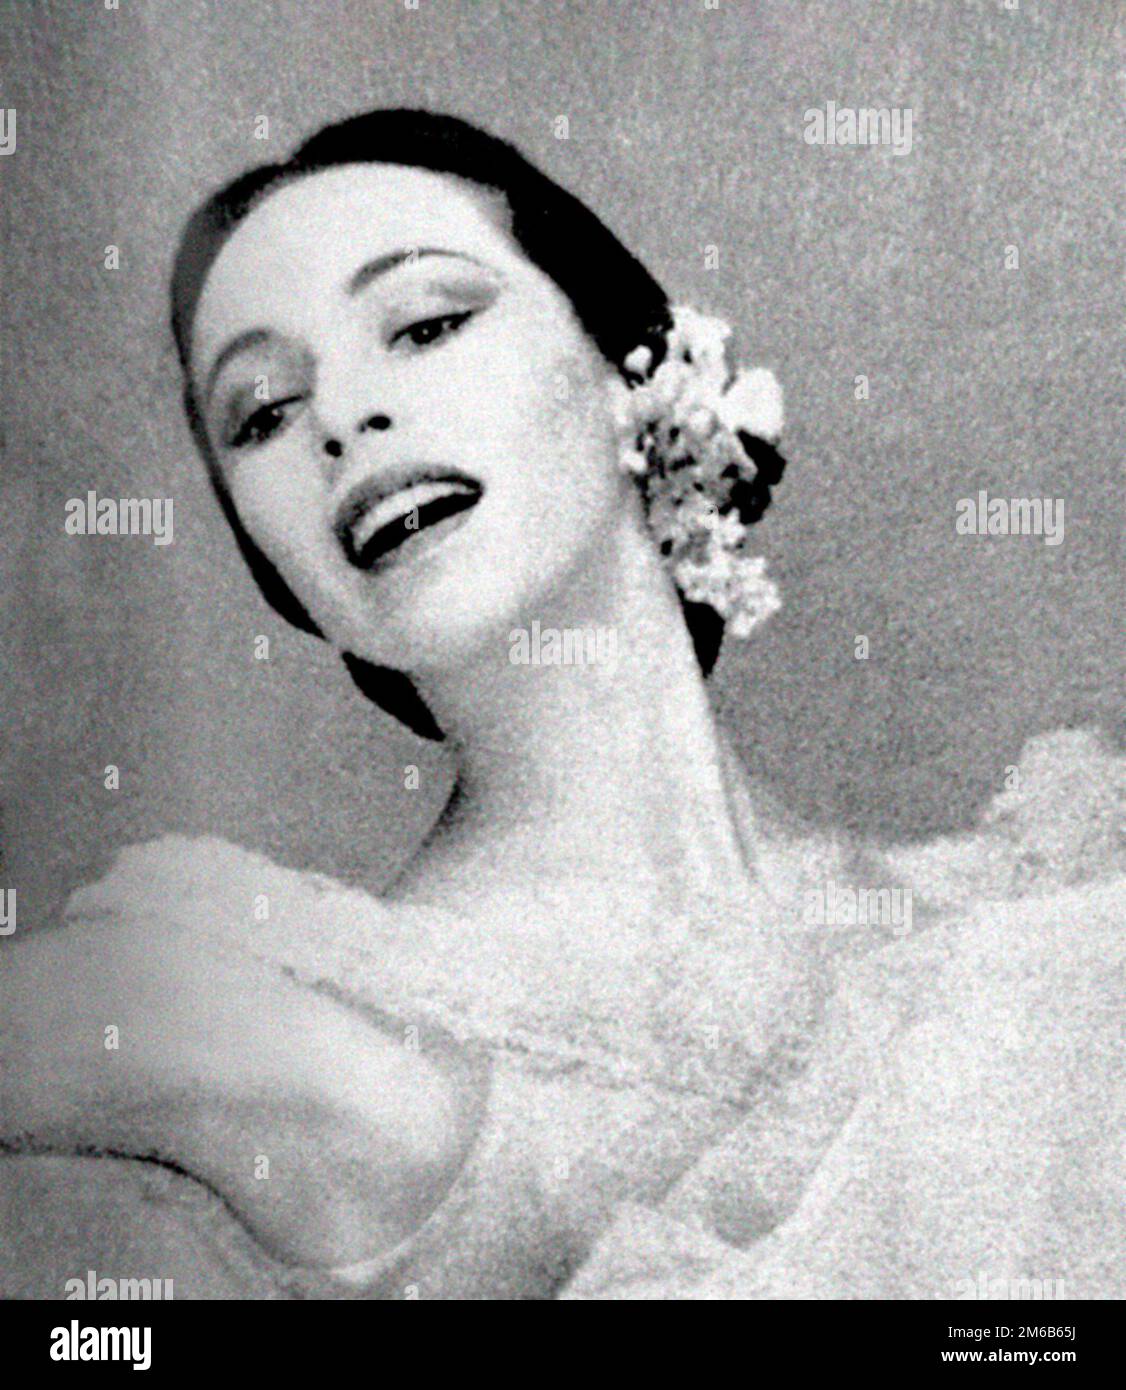 Maria Tallchief. Photographie de la ballerine amérindienne Elizabeth Marie Tallchien (1925-2013) en 1954 Banque D'Images